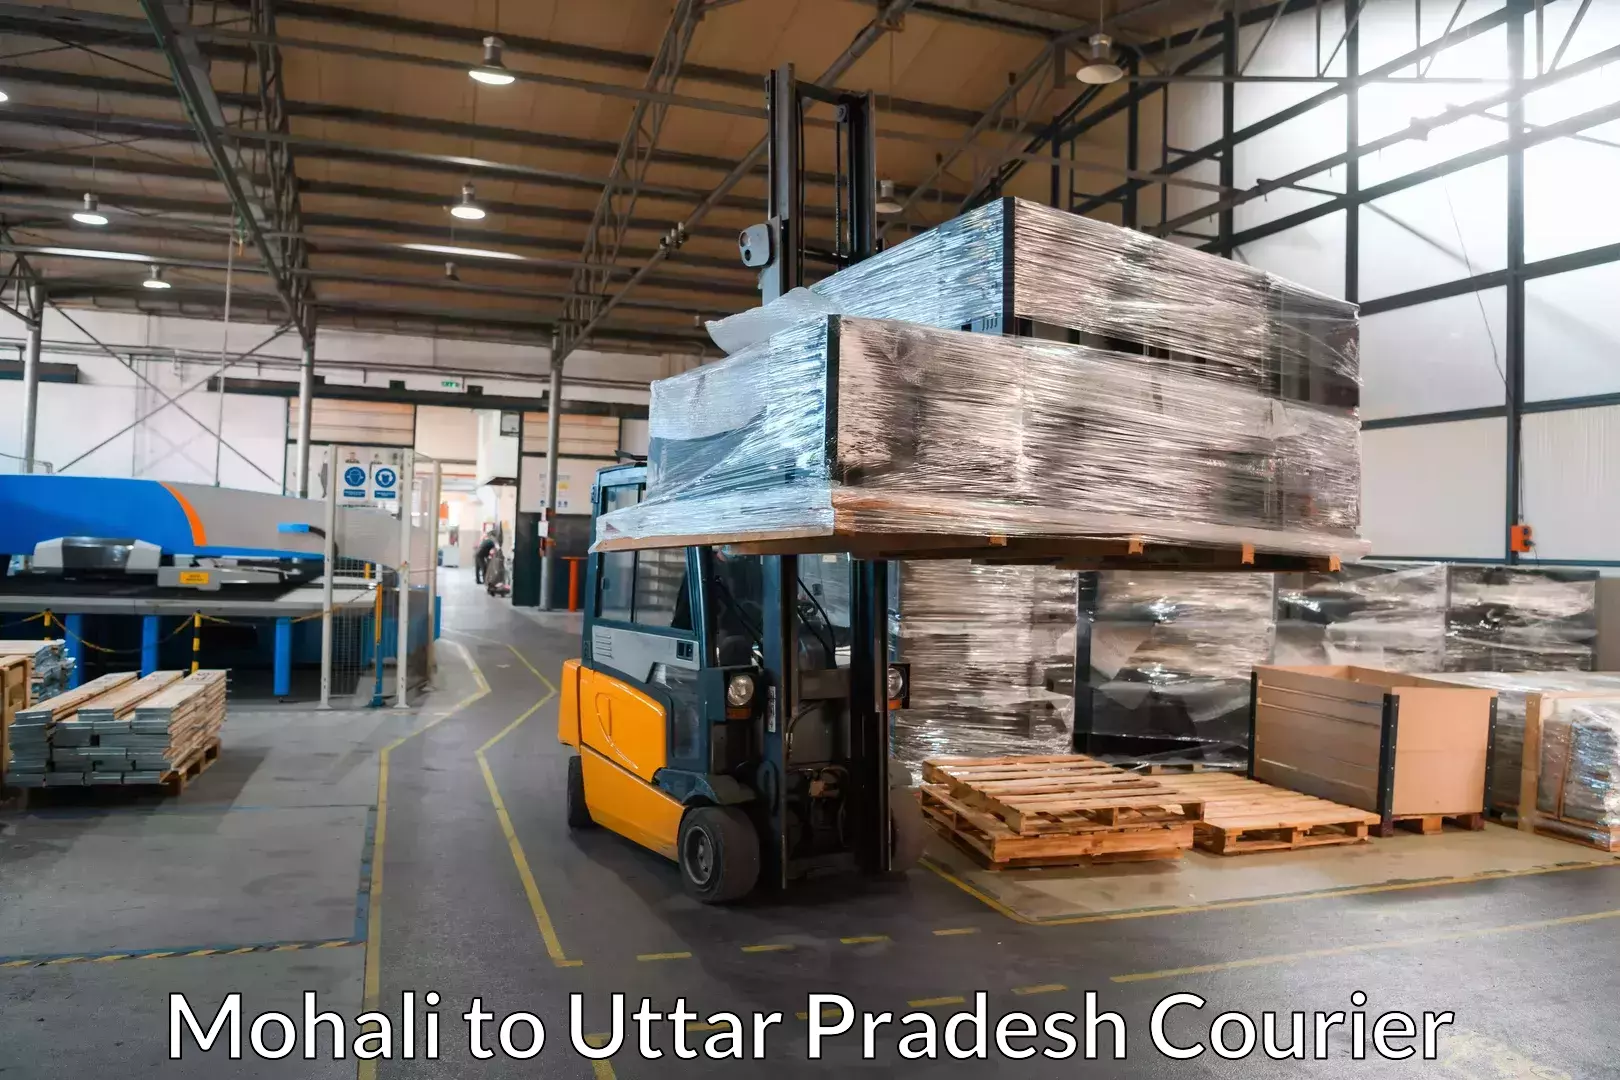 Household moving experts Mohali to Uttar Pradesh